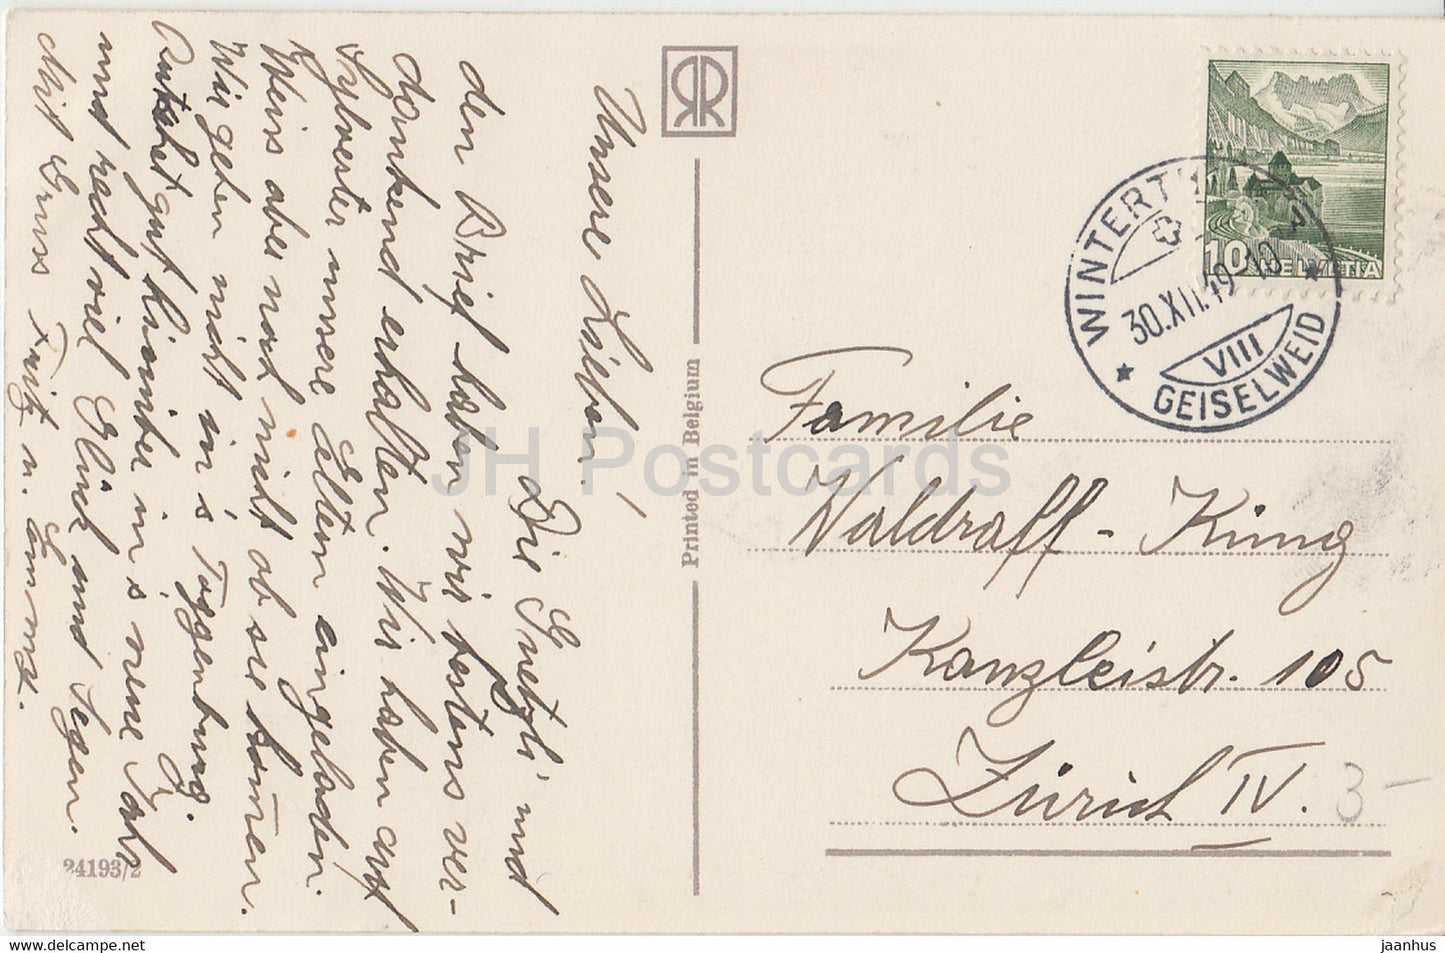 Carte de vœux du Nouvel An - Gluckliches Neues Jahr - fille et chien - 23193/2 - carte postale ancienne - 1949 - Allemagne - utilisé